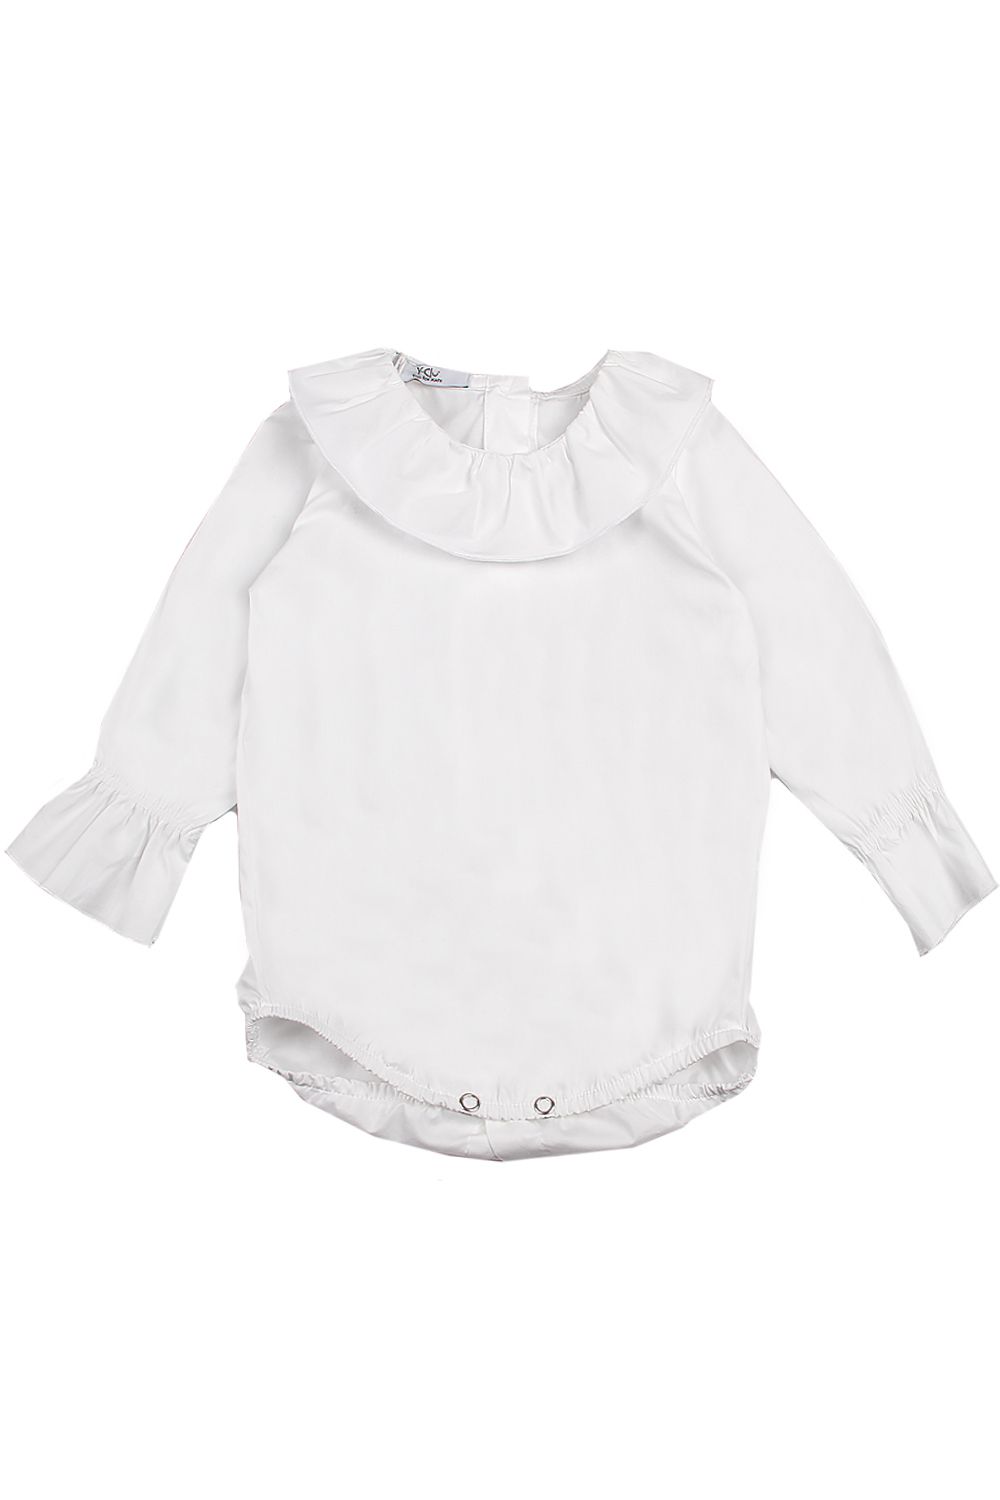 Блуза-боди Y-clu', размер 80, цвет белый YN14800 - фото 1